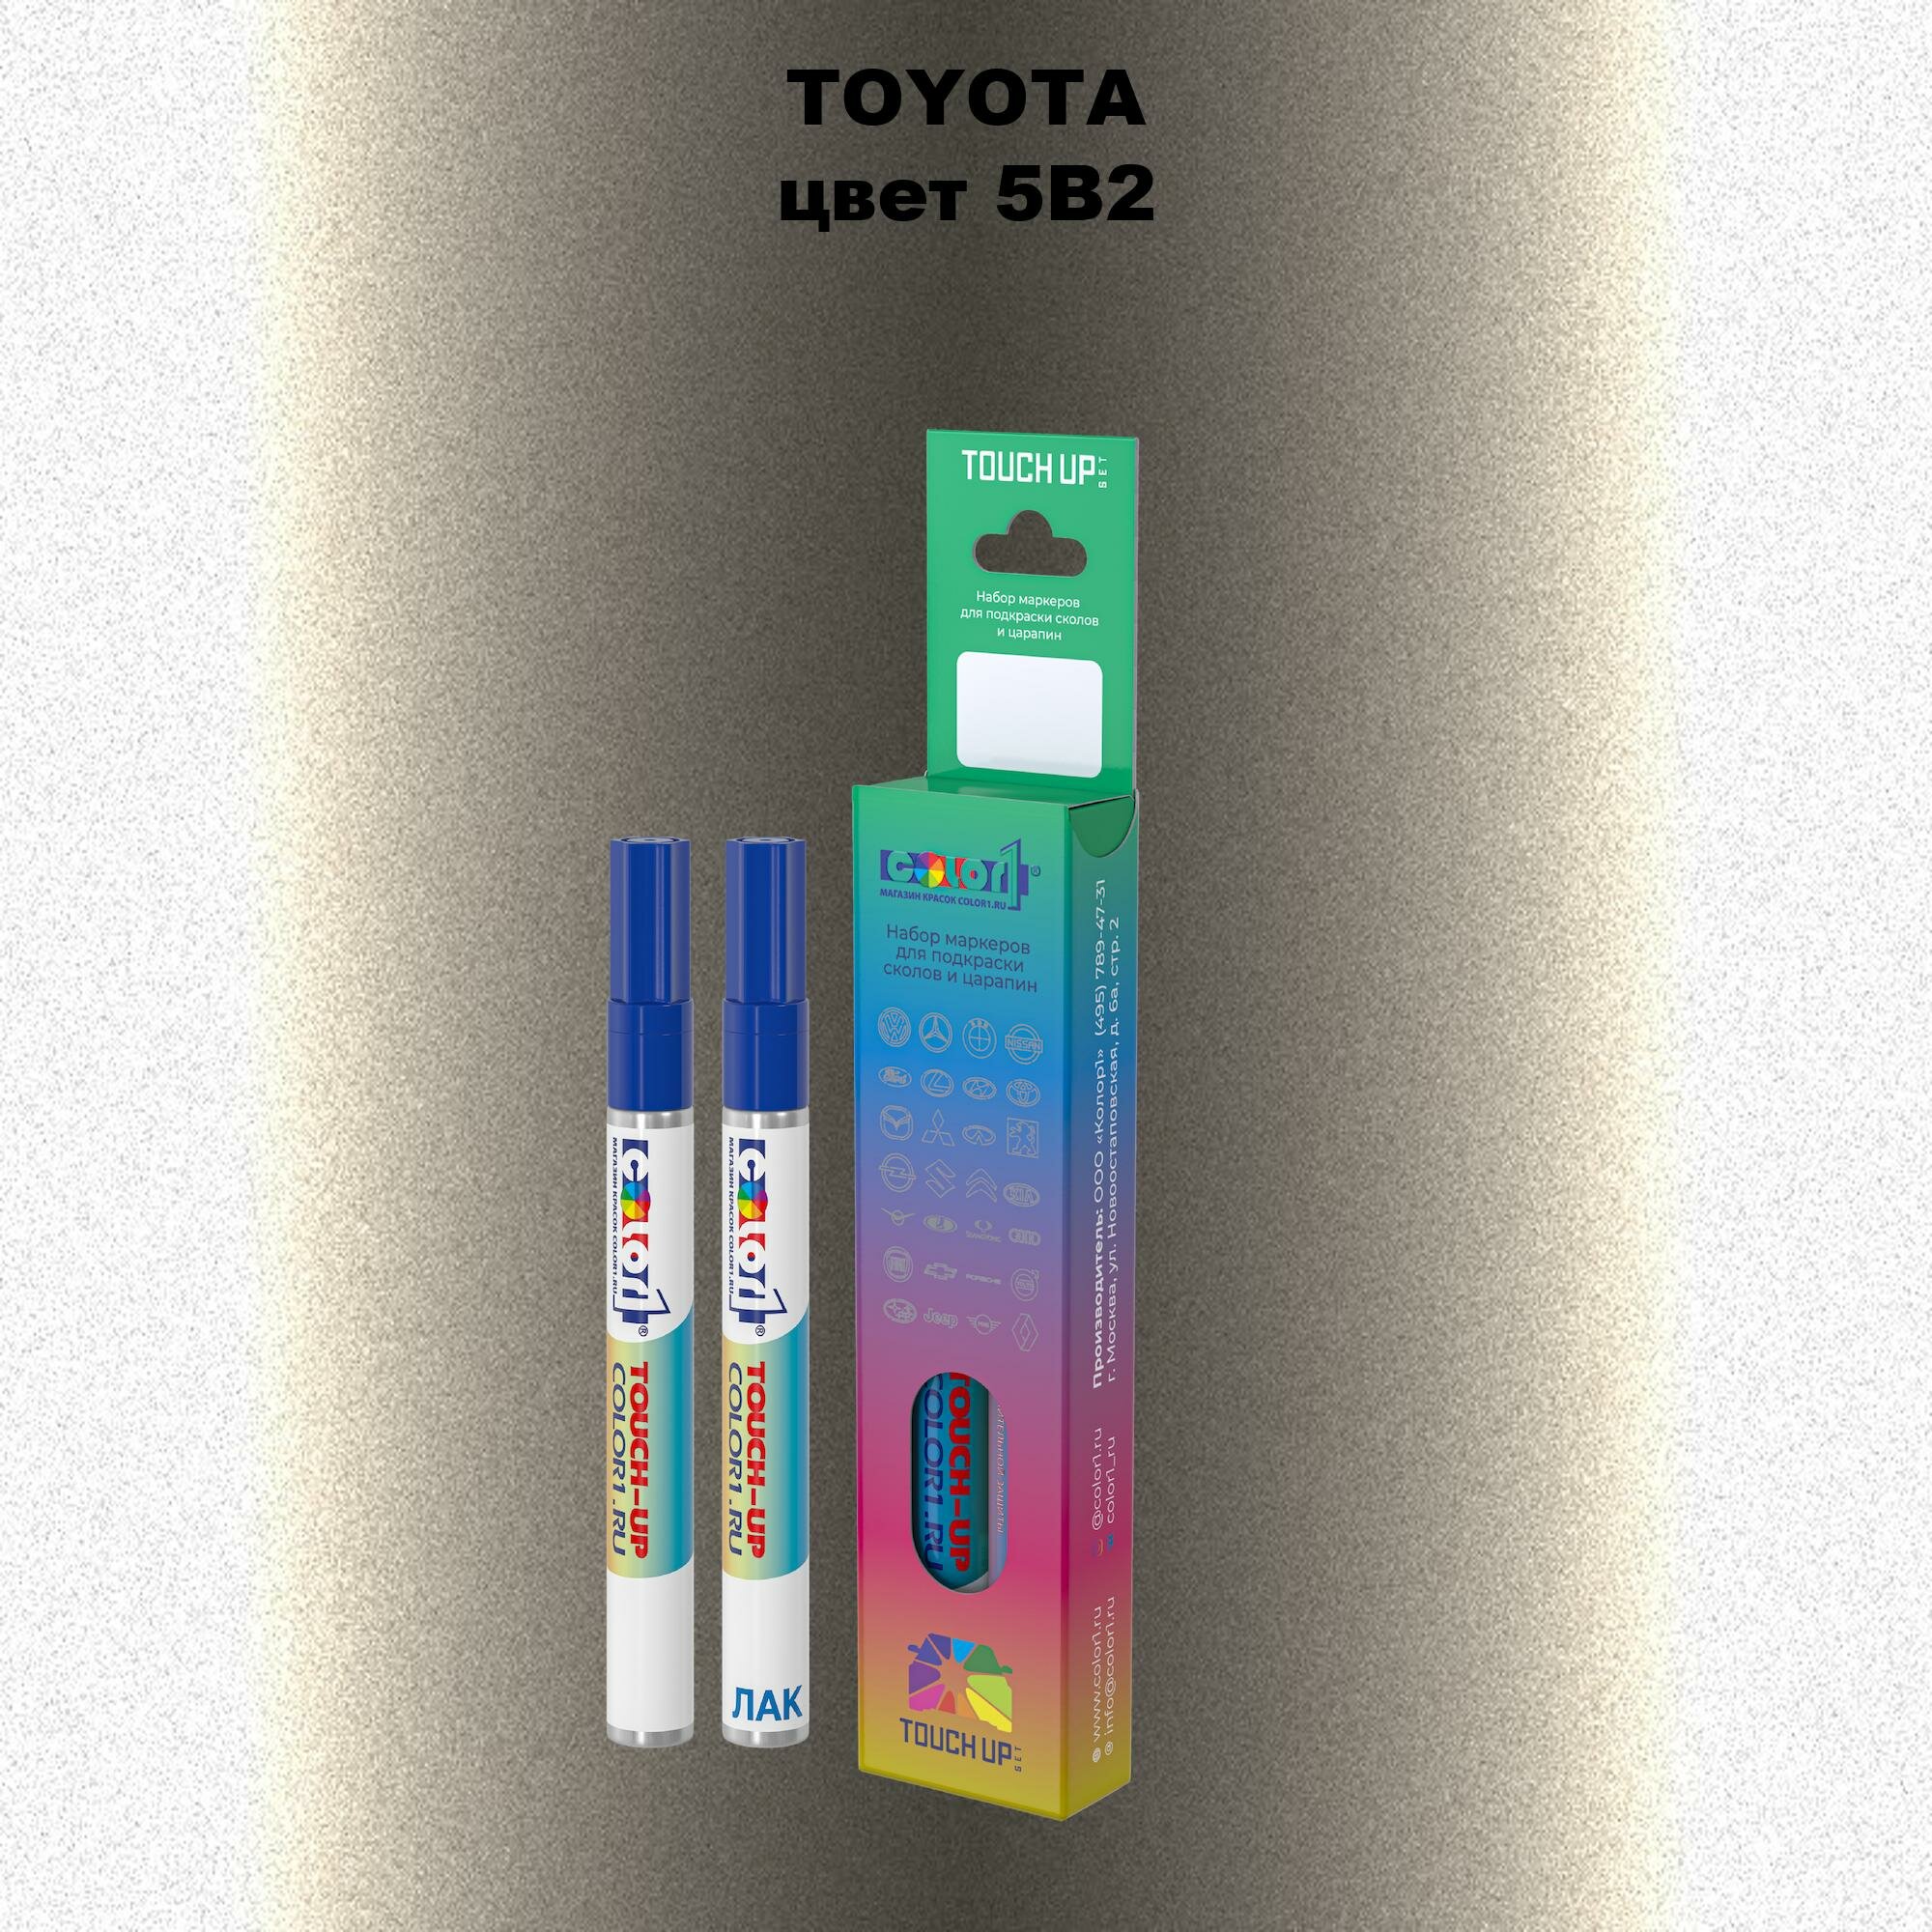 Набор маркеров (маркер с краской и маркер с лаком) для закраски сколов и царапин на автомобиле TOYOTA, цвет 5B2 - CREME BRULEE MICA, CHAMPAGNE MICA, CHAMPAGNE PEARL